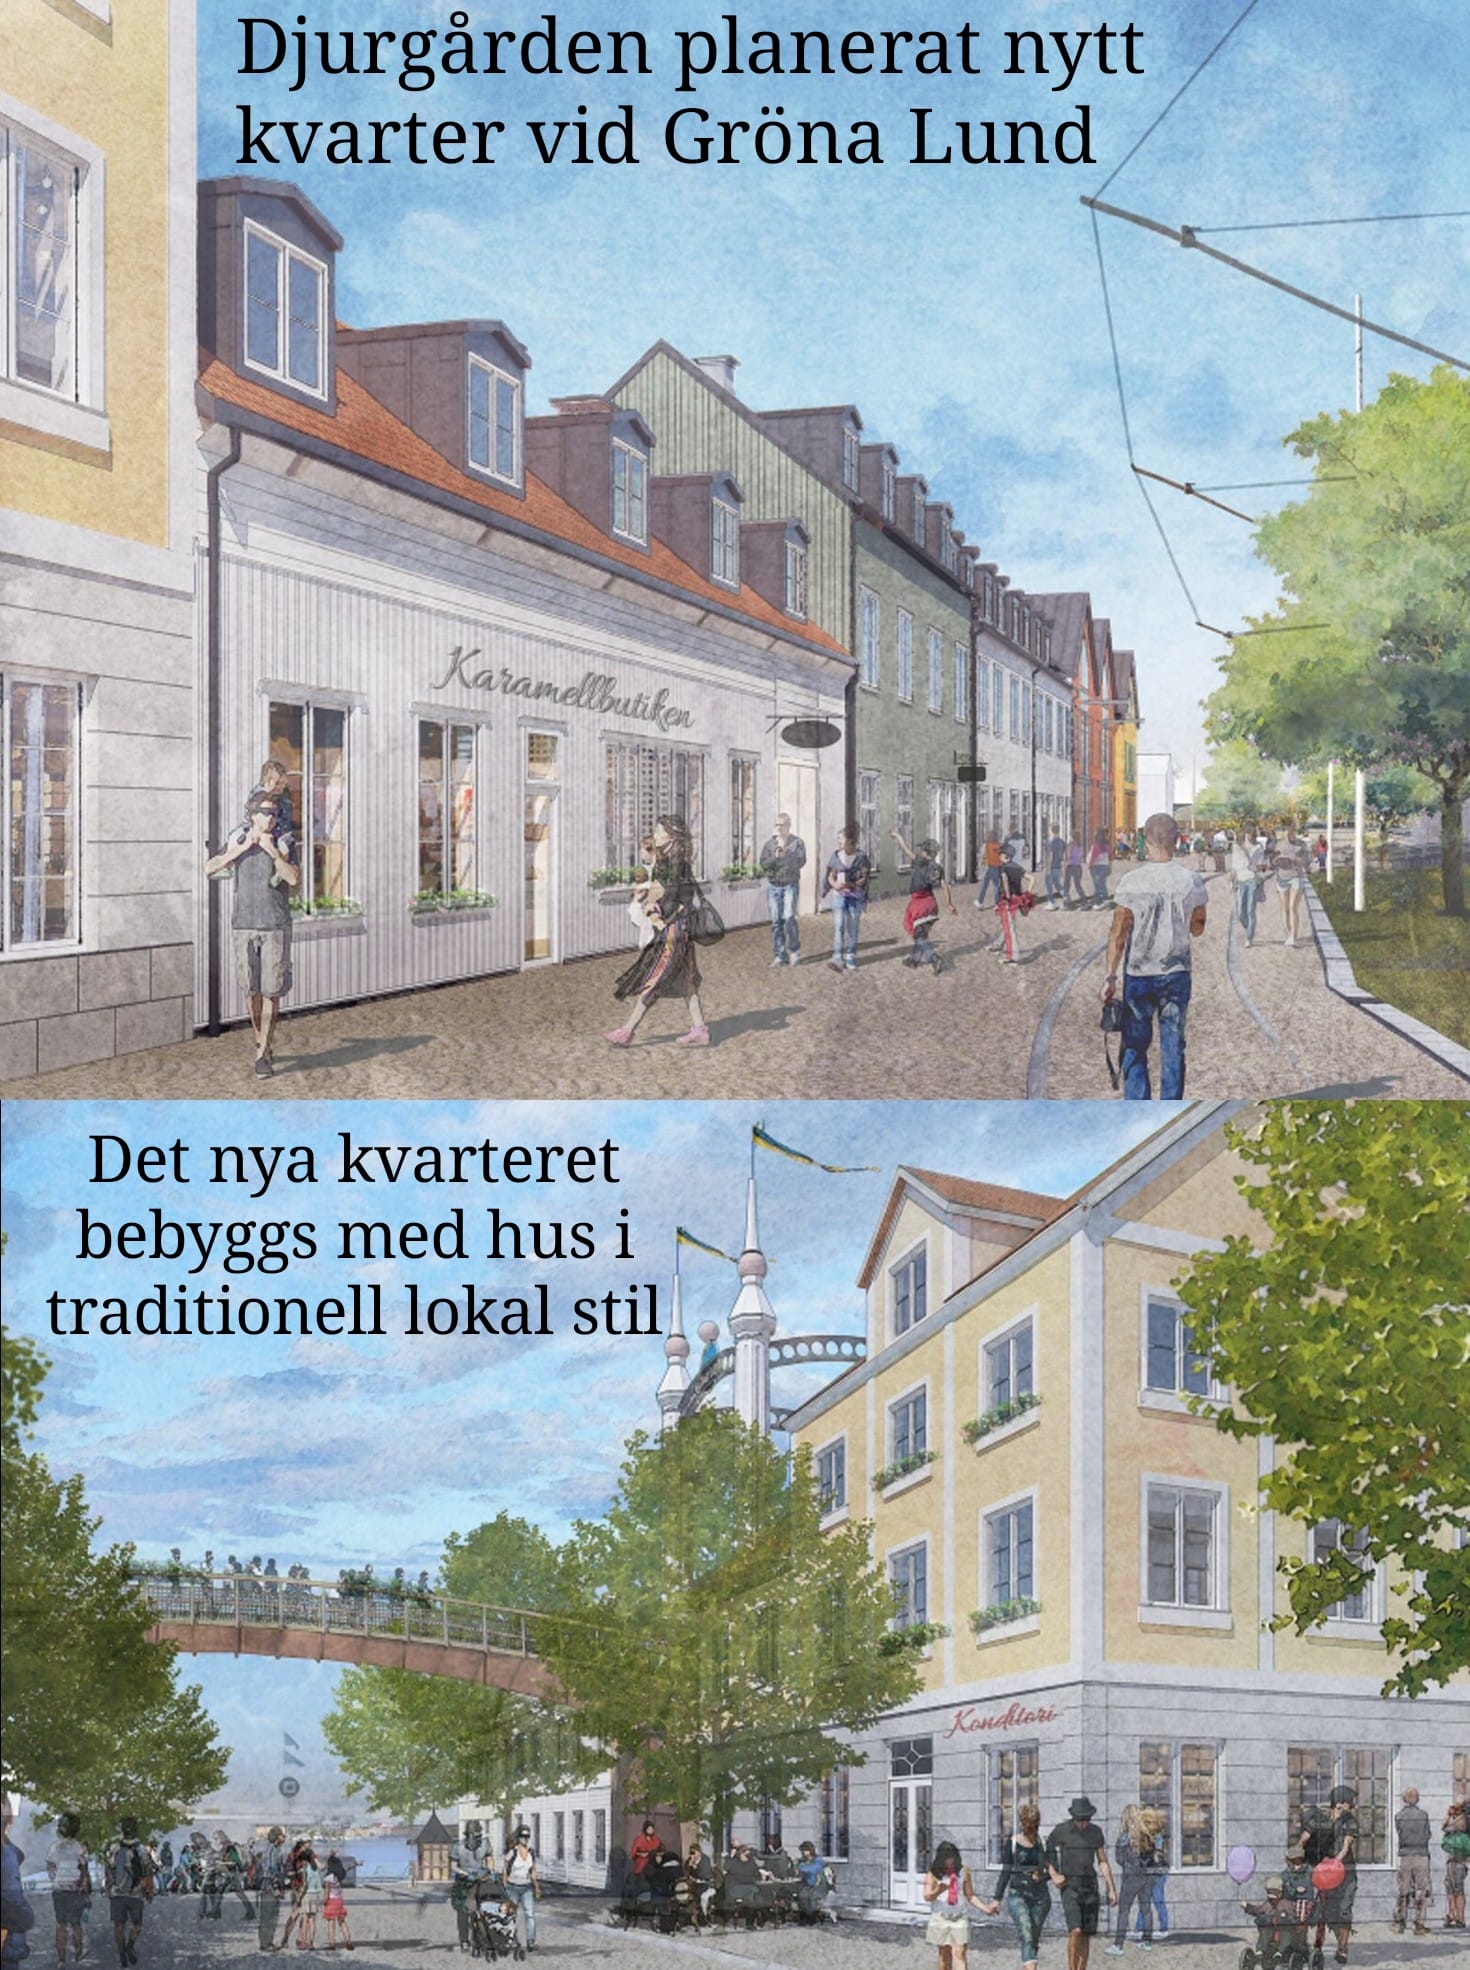 Trots att Gert Wingårdhs nya bunker ligger i närheten väljer Gröna Lund istället att låta det nya kvarteret få nya hus vars arkitektur har tagit inspiration från det gamla Djurgården. 